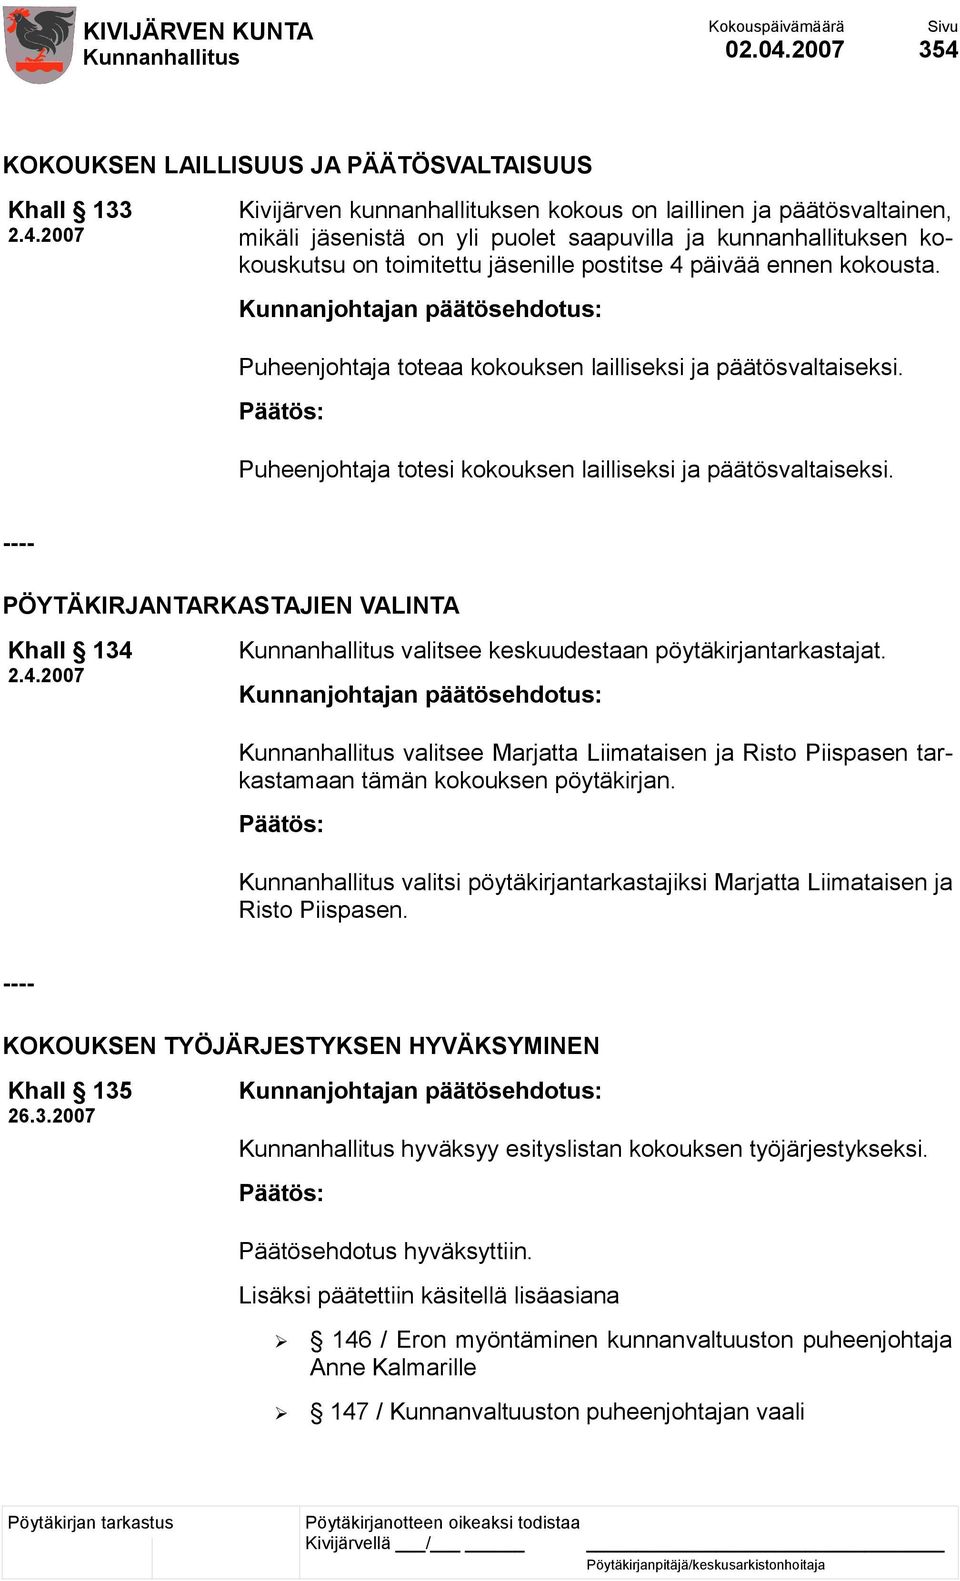 KOKOUKSEN LAILLISUUS JA PÄÄTÖSVALTAISUUS Khall 133 2.4.